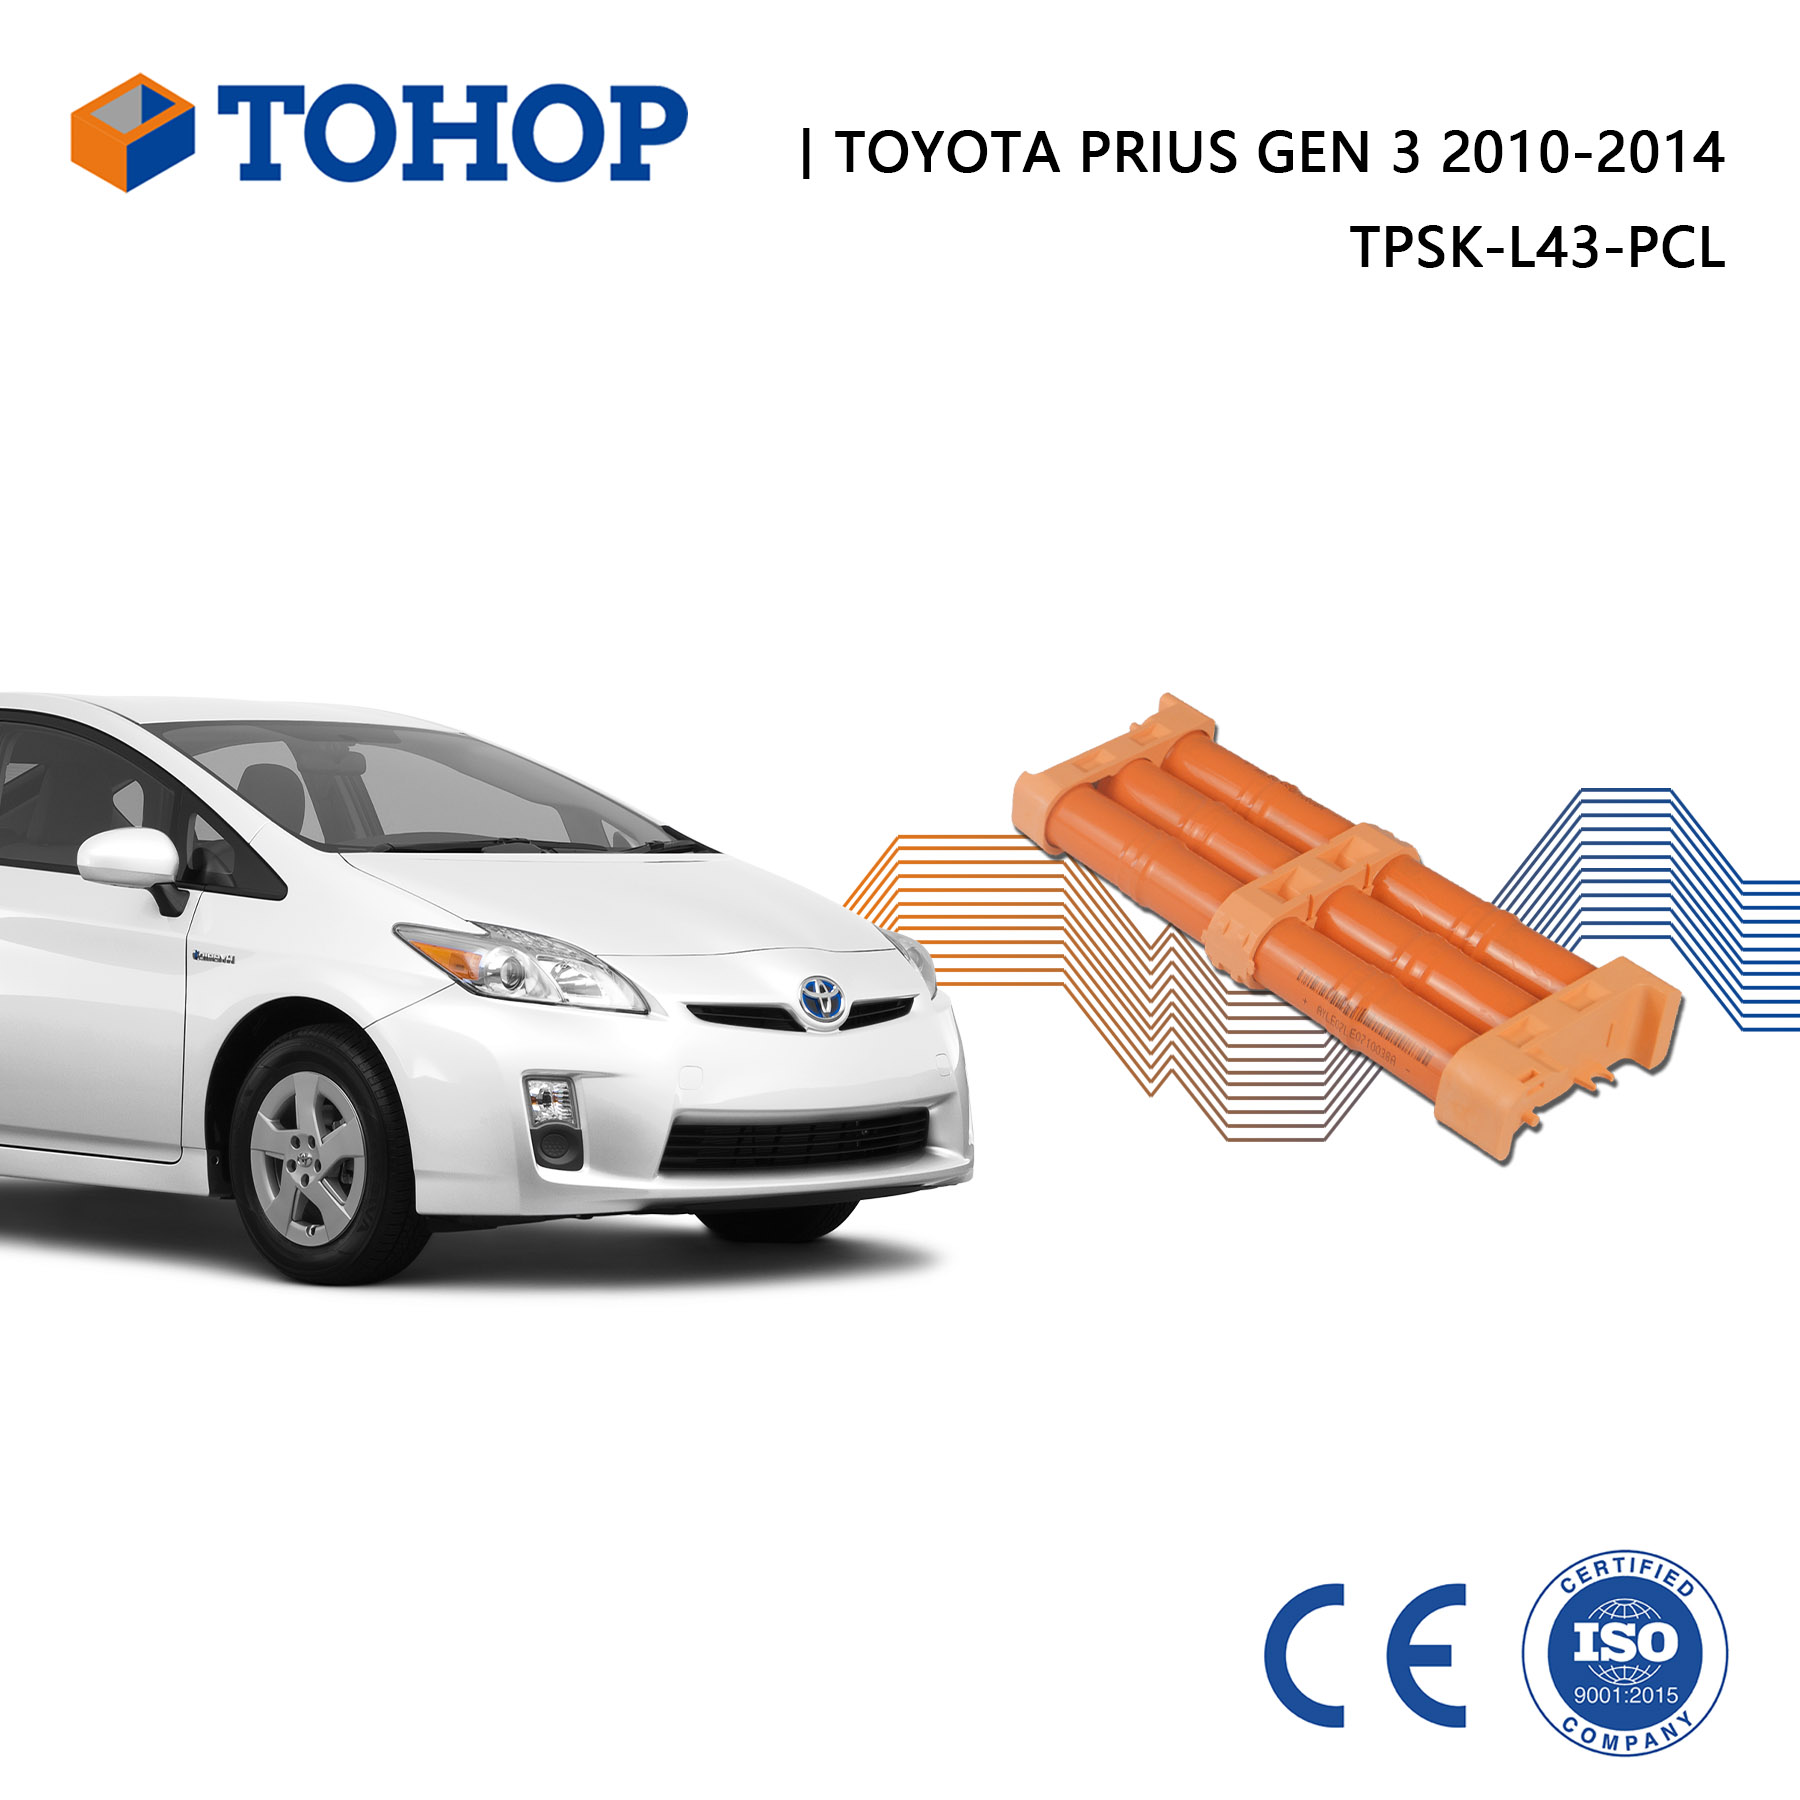 Batería híbrida 2010-2015 6.5Ah de Toyota Prius Gen.3 Paquete de batería de coche híbrido